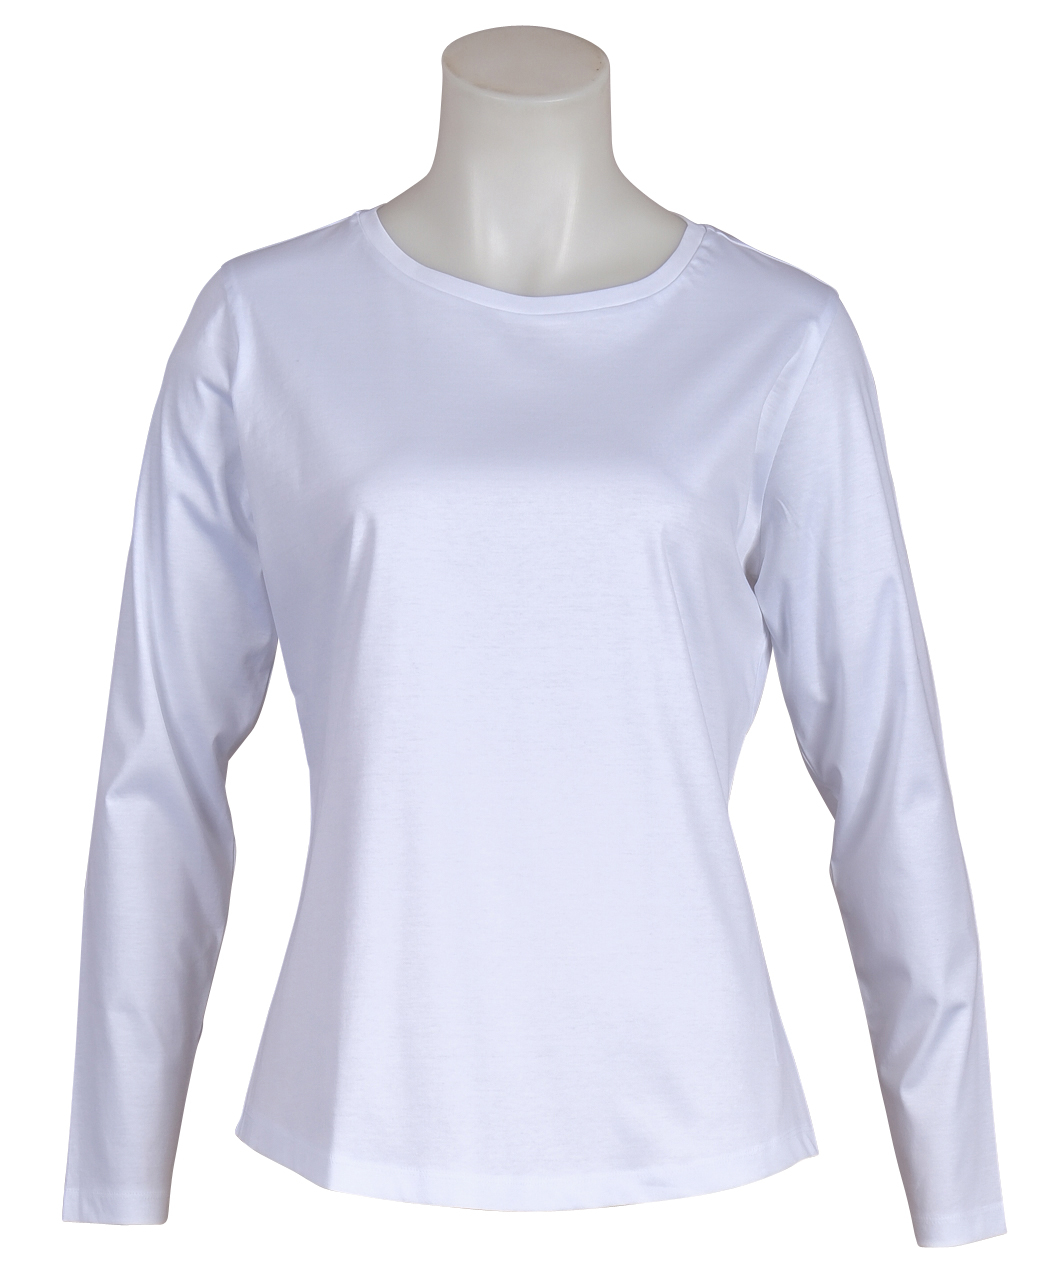 Soluzione - Jersey-Shirt - Langarm - Weiß